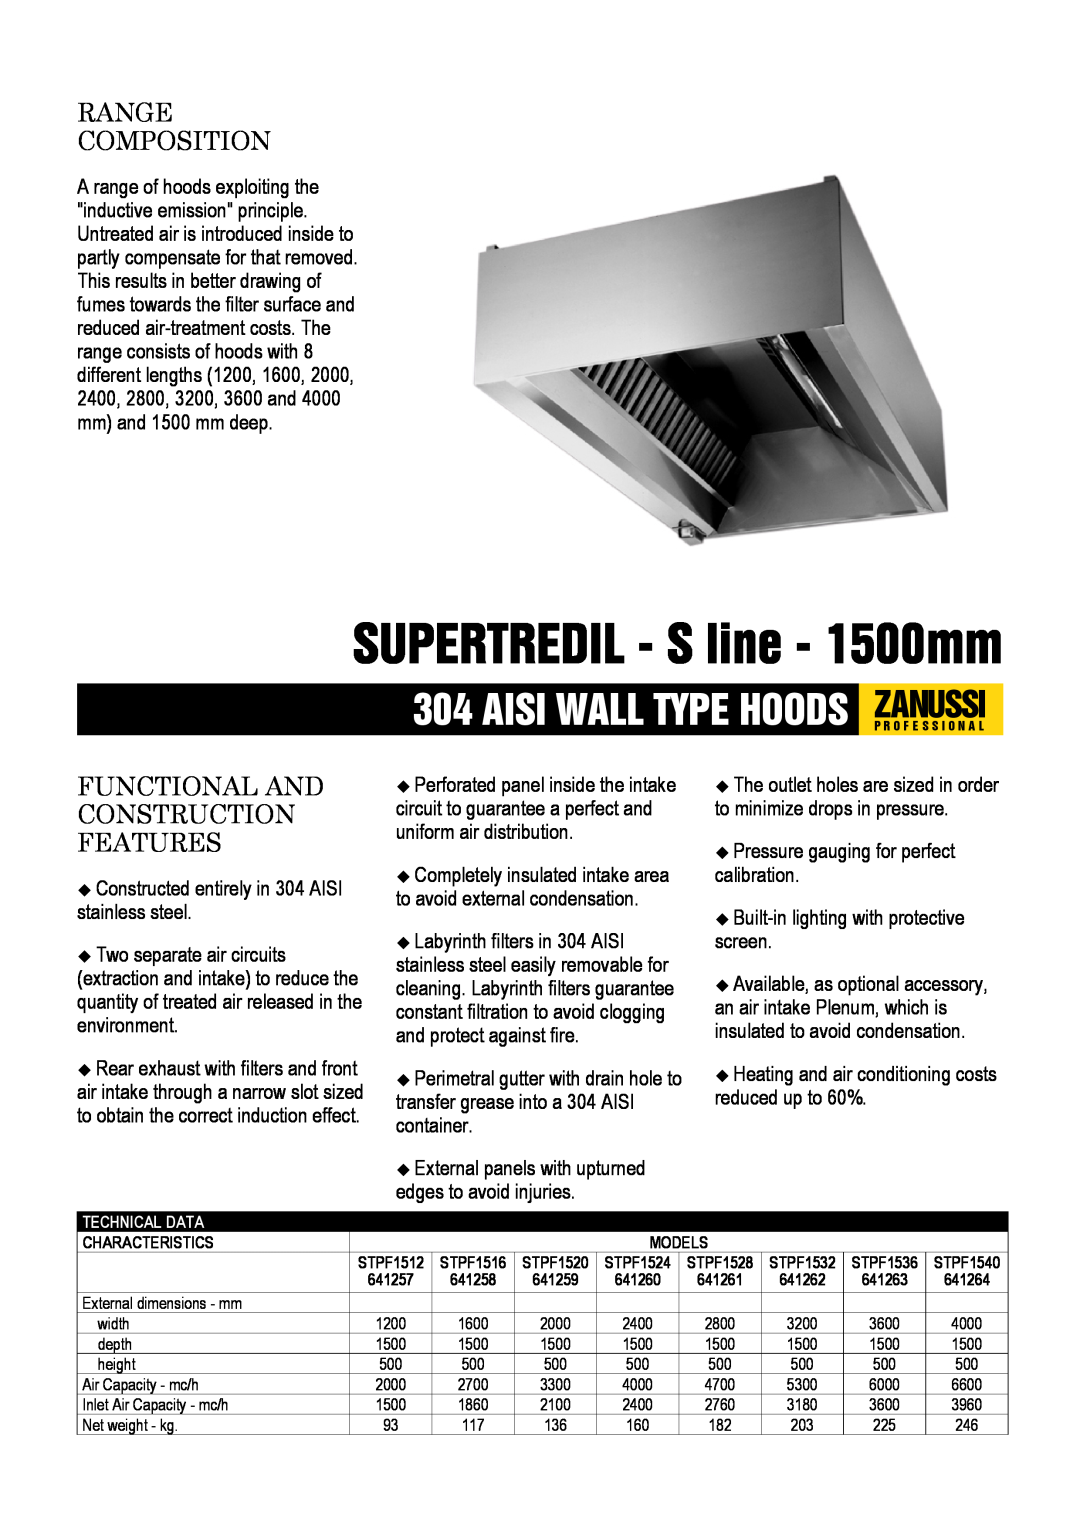 Zanussi STPF1524, STPF1536 dimensions SUPERTREDIL - S line - 1500mm, Aisi Wall Type Hoods Zanussip R O F E S S I O N A L 